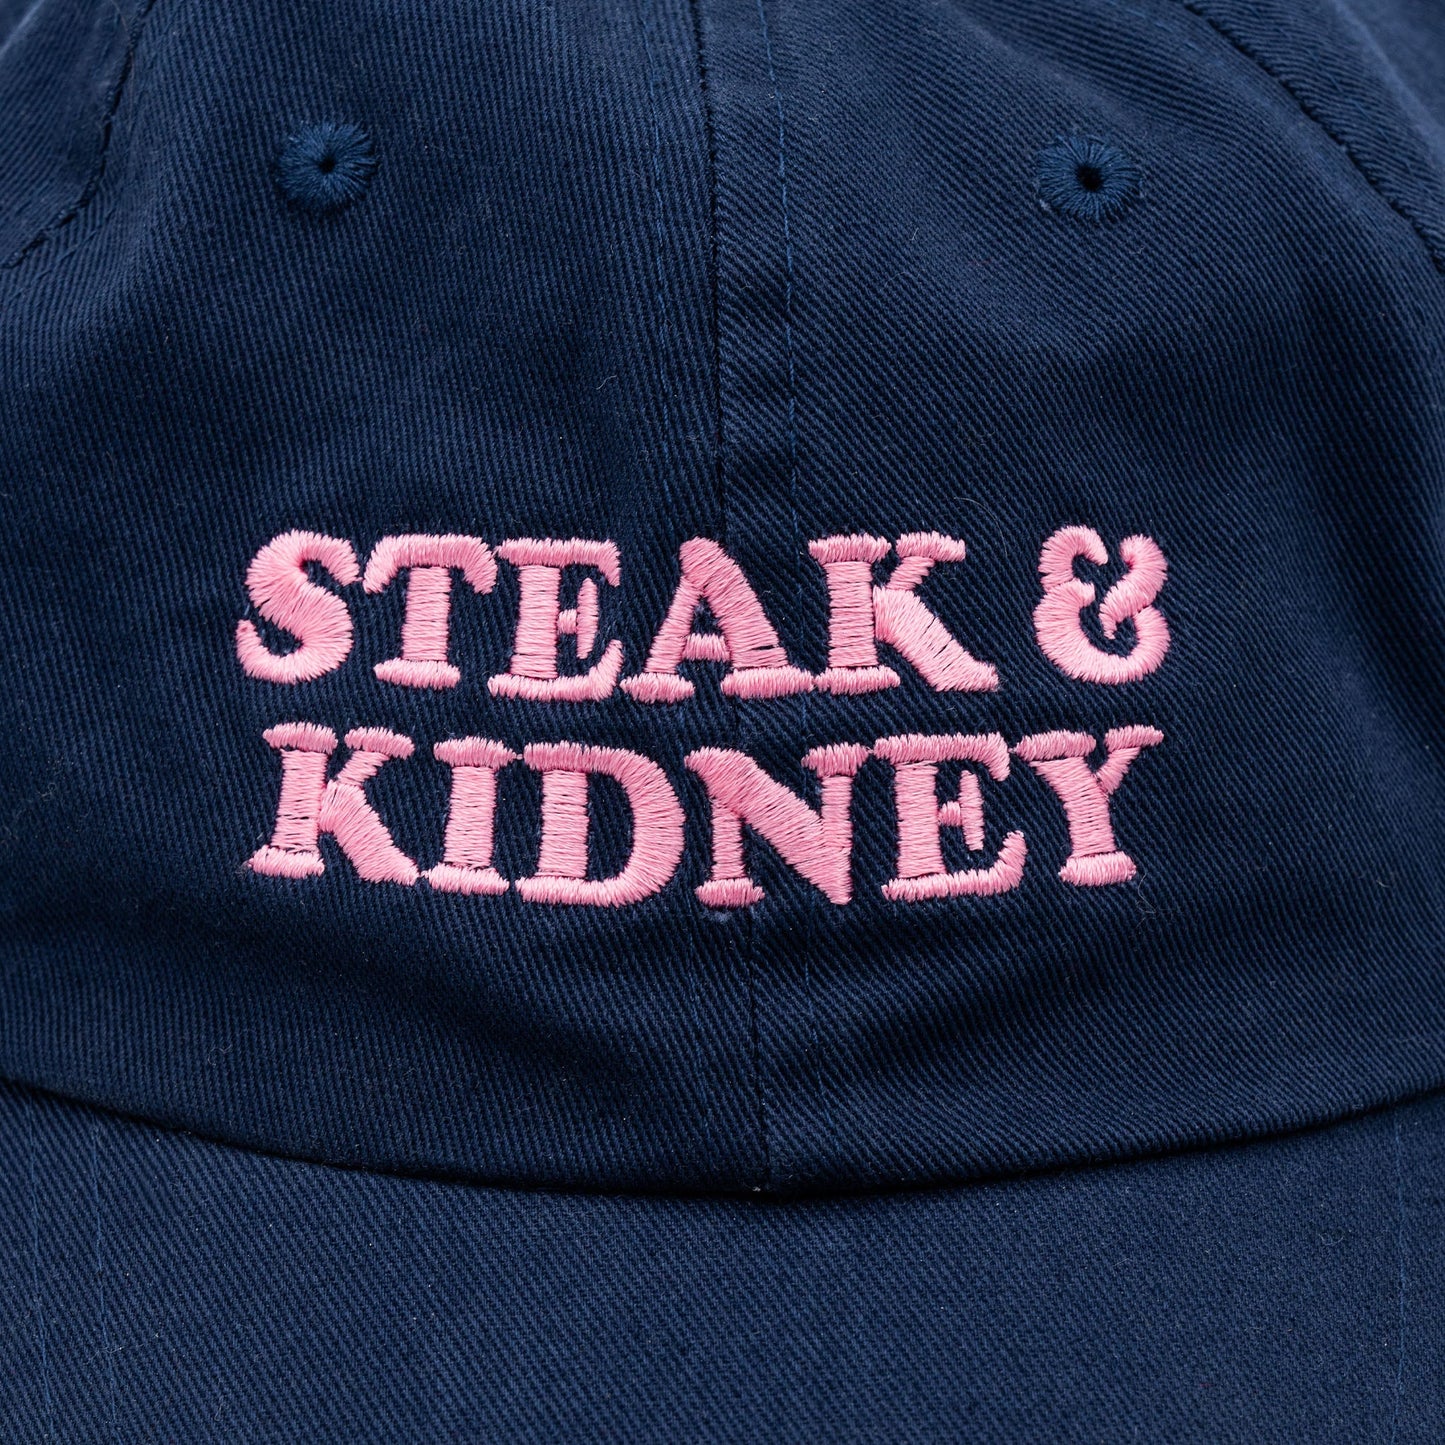 Steak & Kidney - Cap